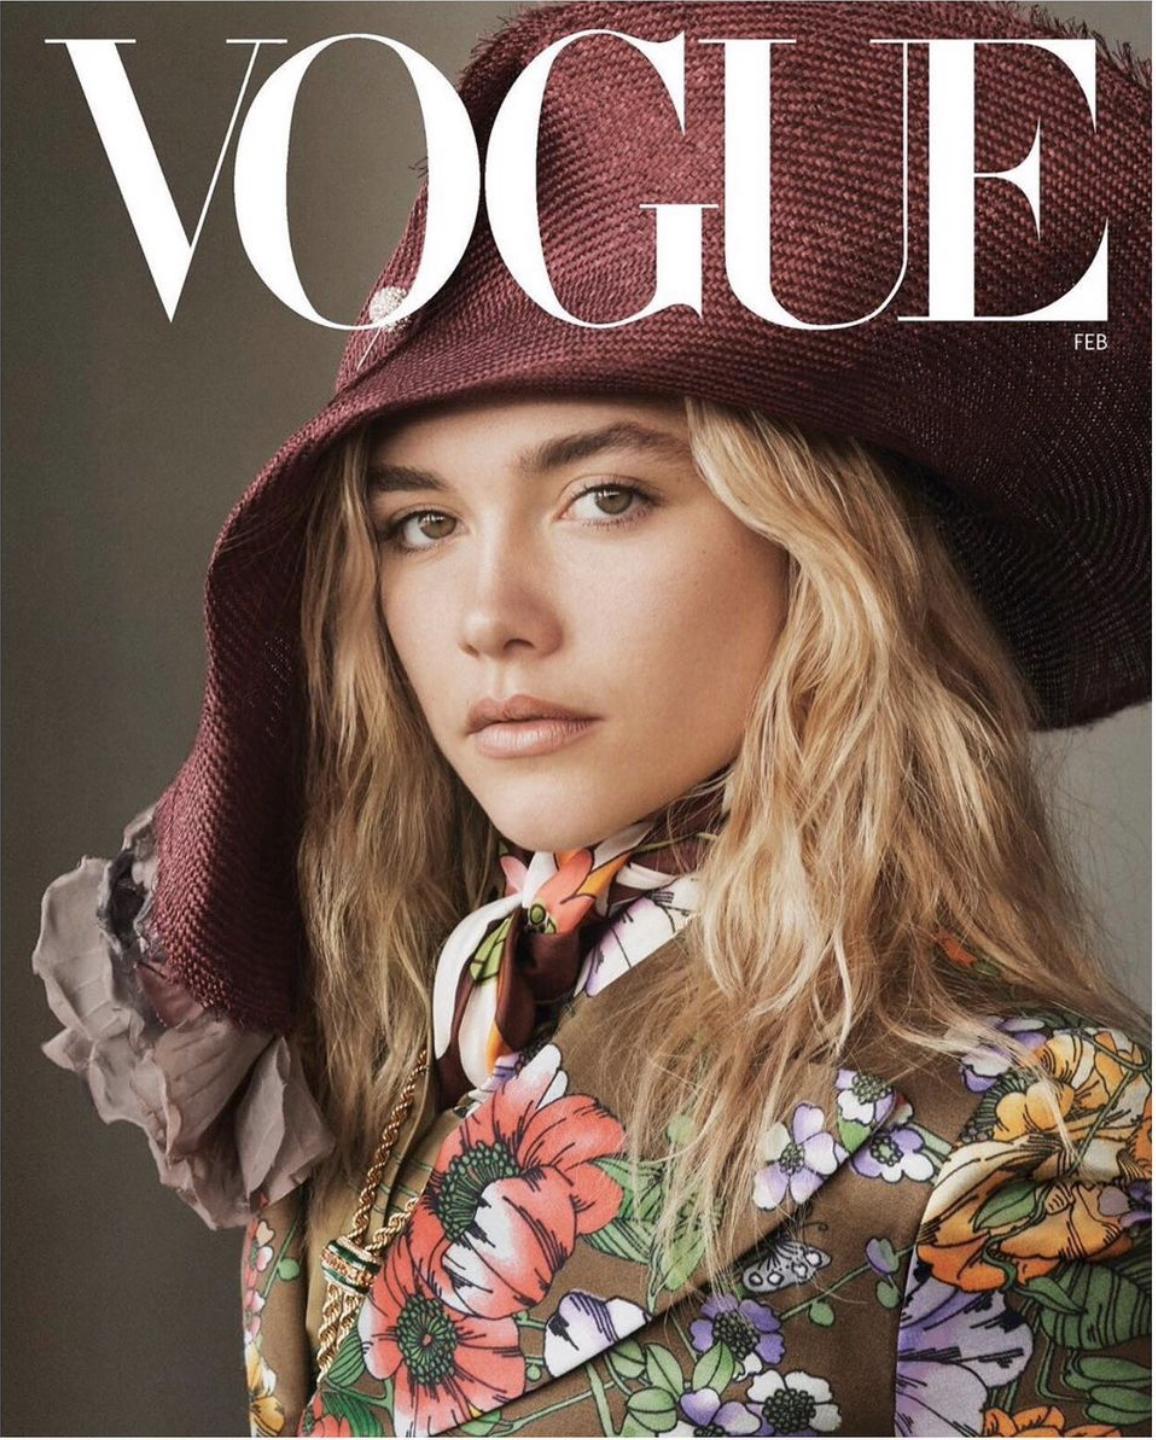 Florence Pugh for Vogue Magazine 2019 